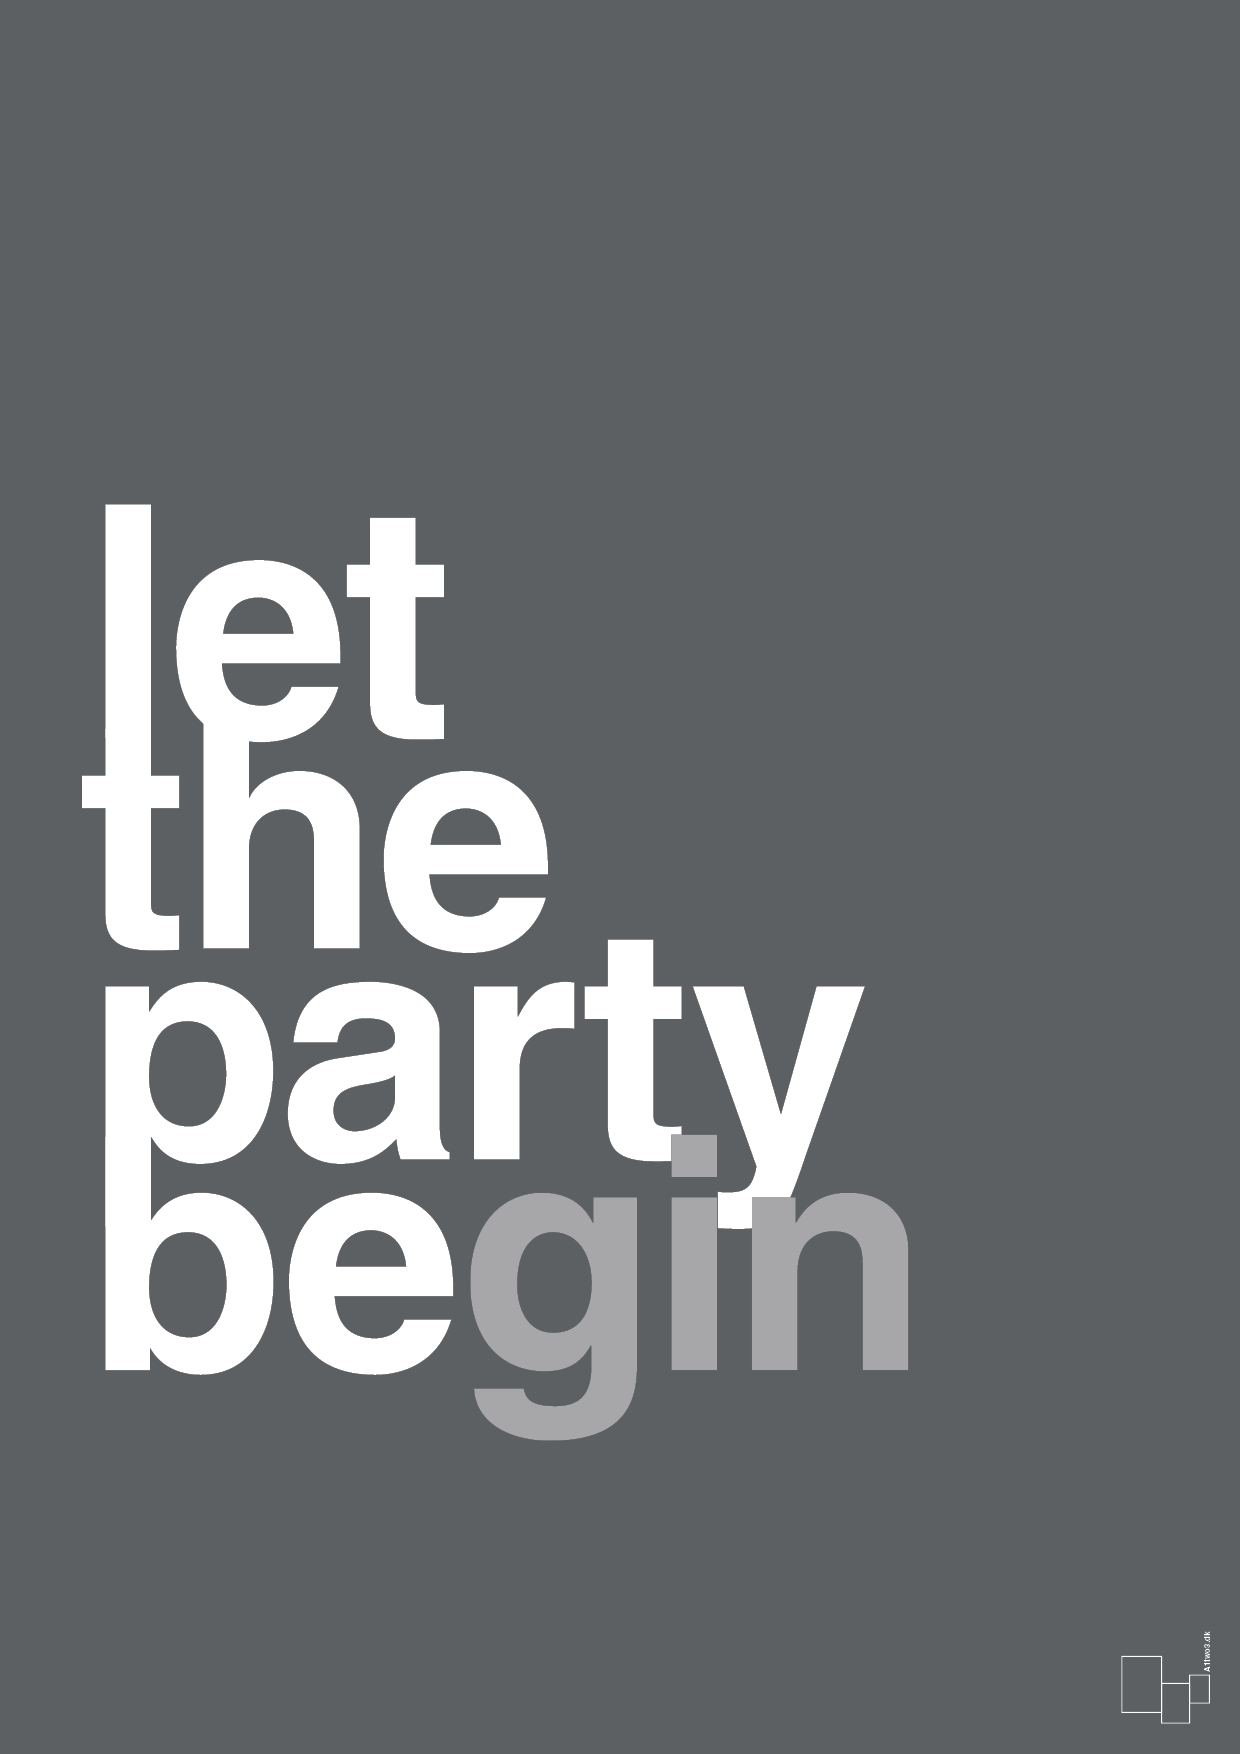 let the party begin - Plakat med Ordsprog i Graphic Charcoal